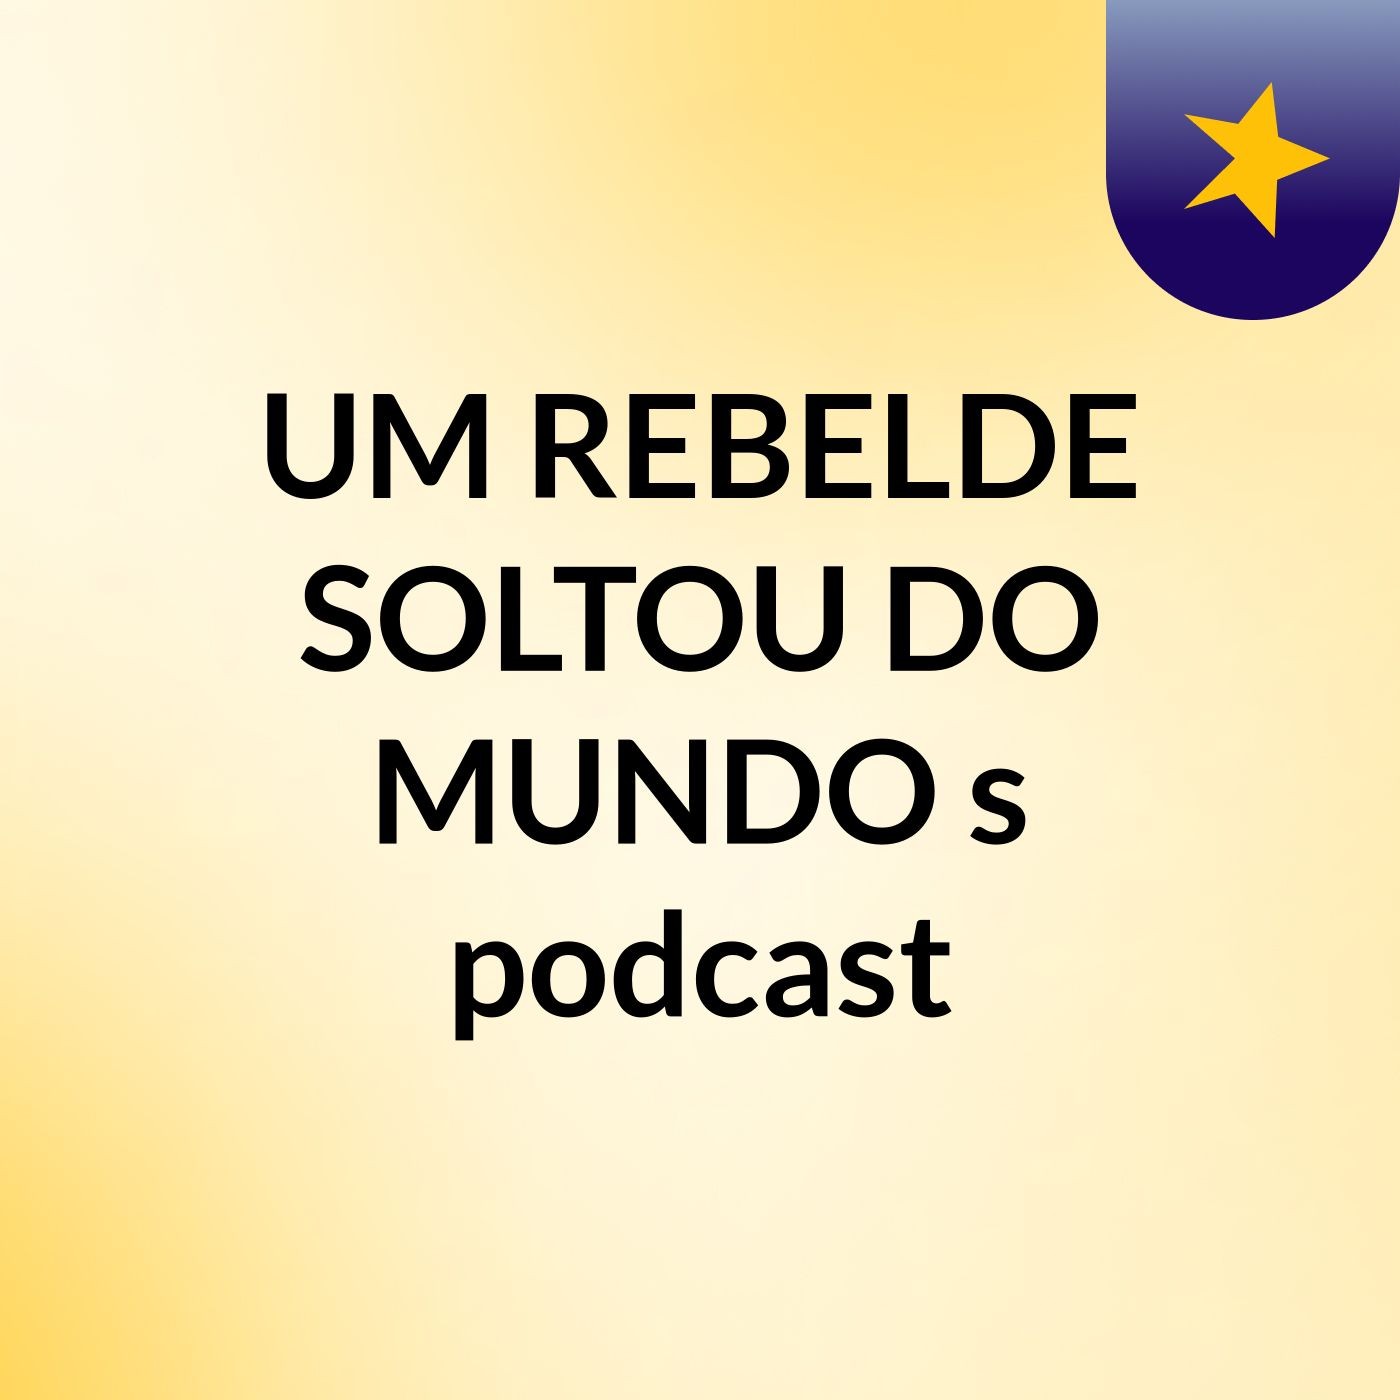 UM REBELDE SOLTOU DO MUNDO's podcast